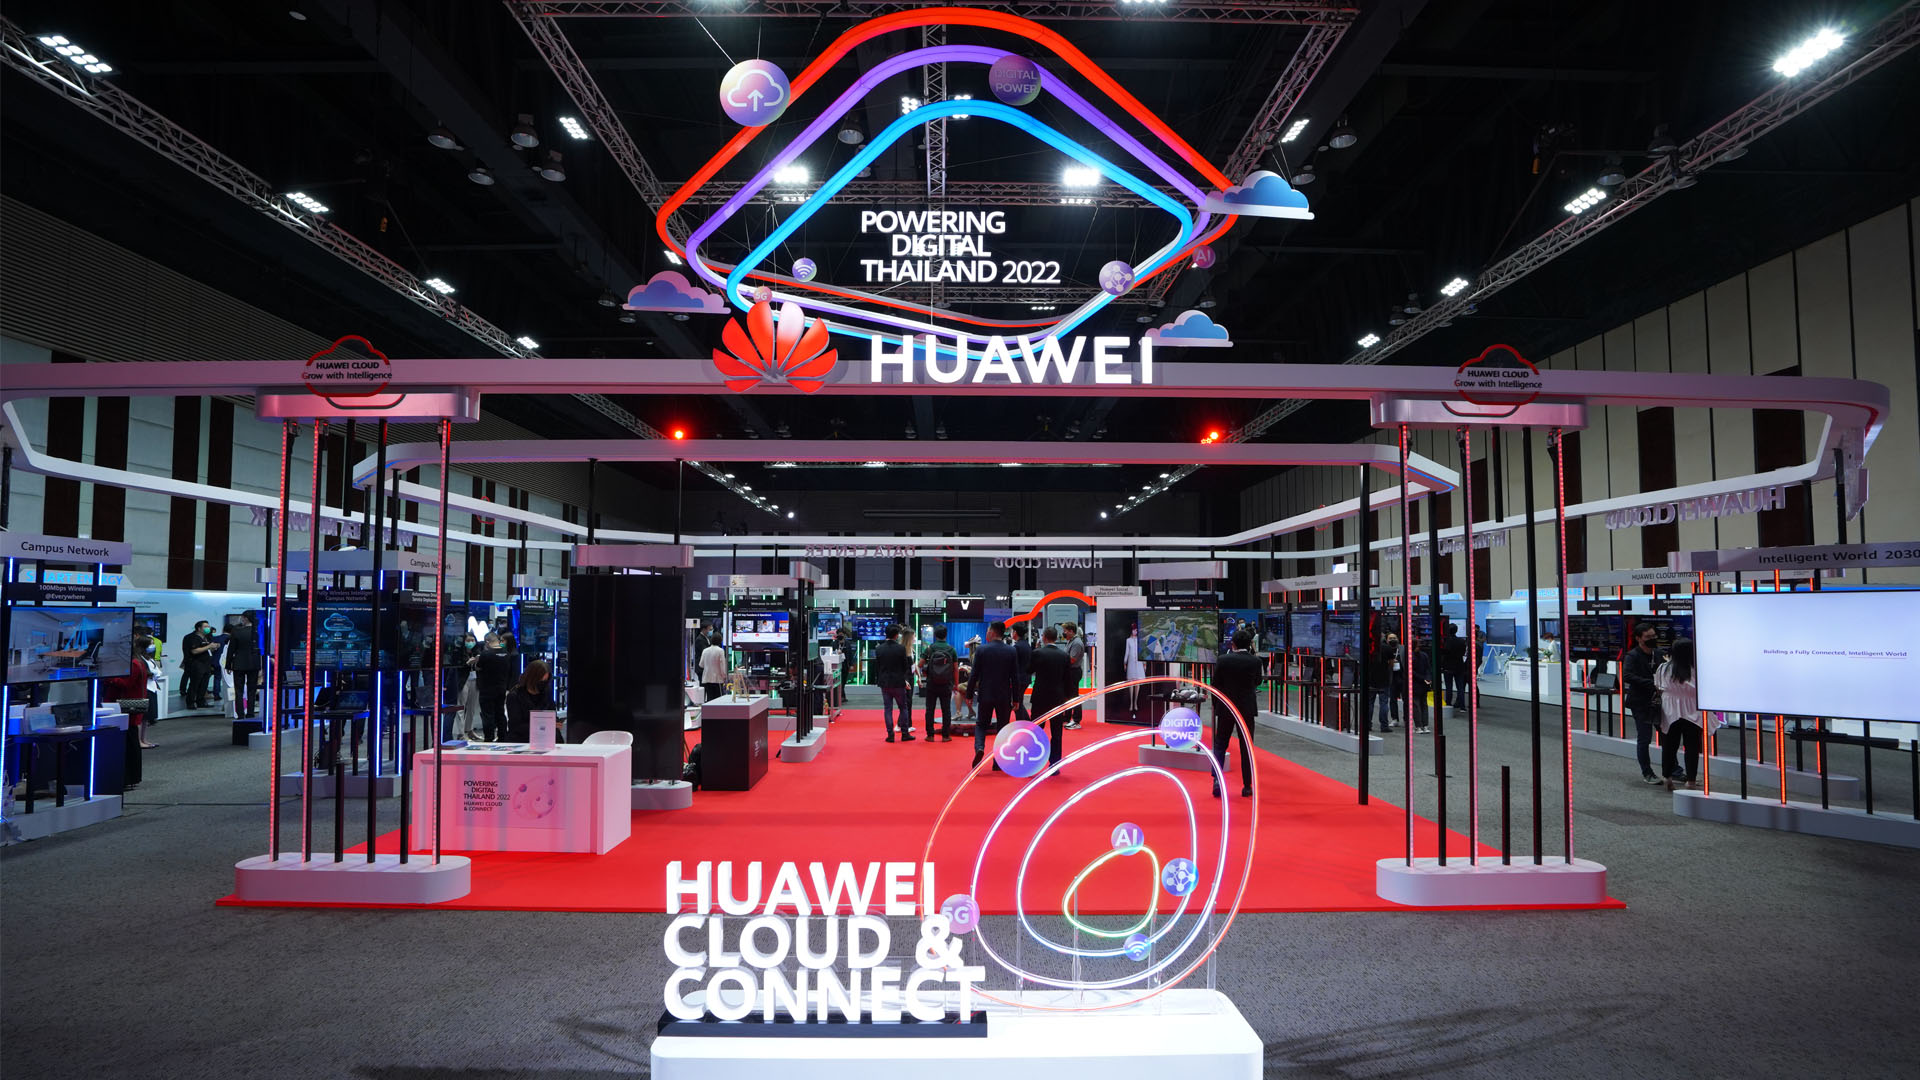 เผยเทคโนโลยีสุดล้ำในงาน  ‘Powering Digital Thailand 2022 Huawei Cloud & Connect Asia-Pacific Innovation Day’ 